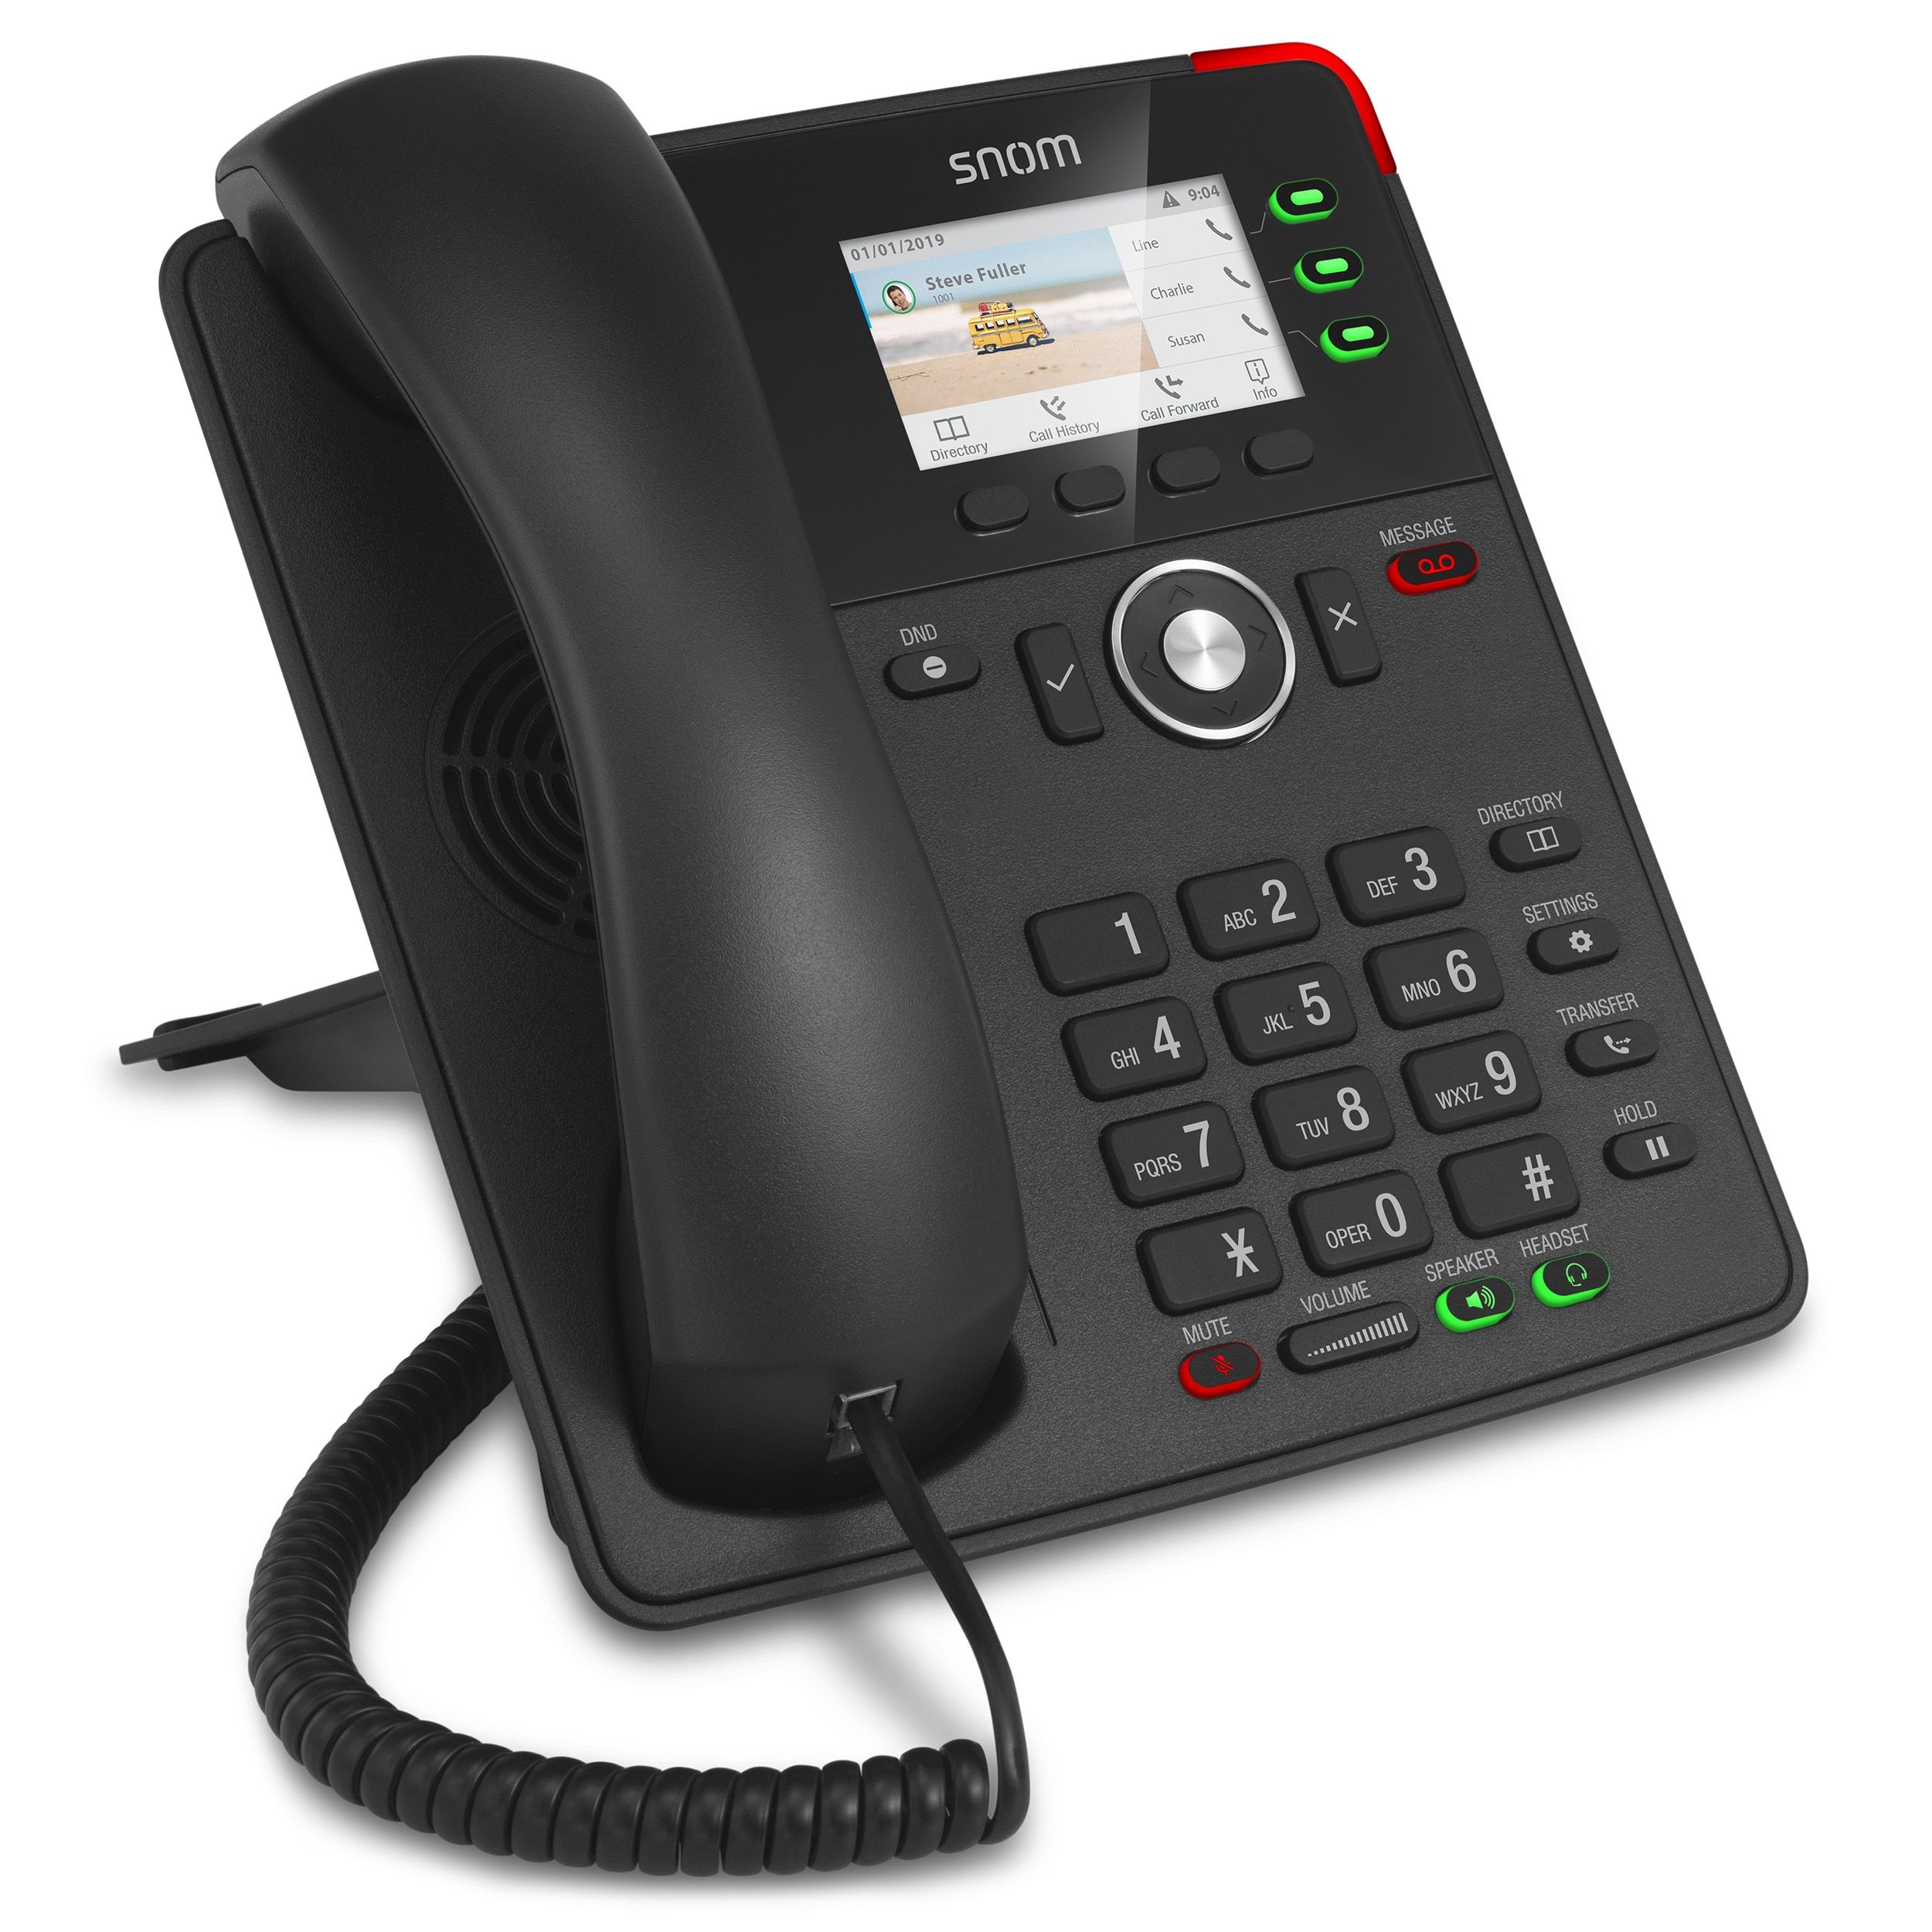 Snom lanza el nuevo teléfono fijo VoIP D717, con pantalla a colores y  teclas multifunción sin etiquetas